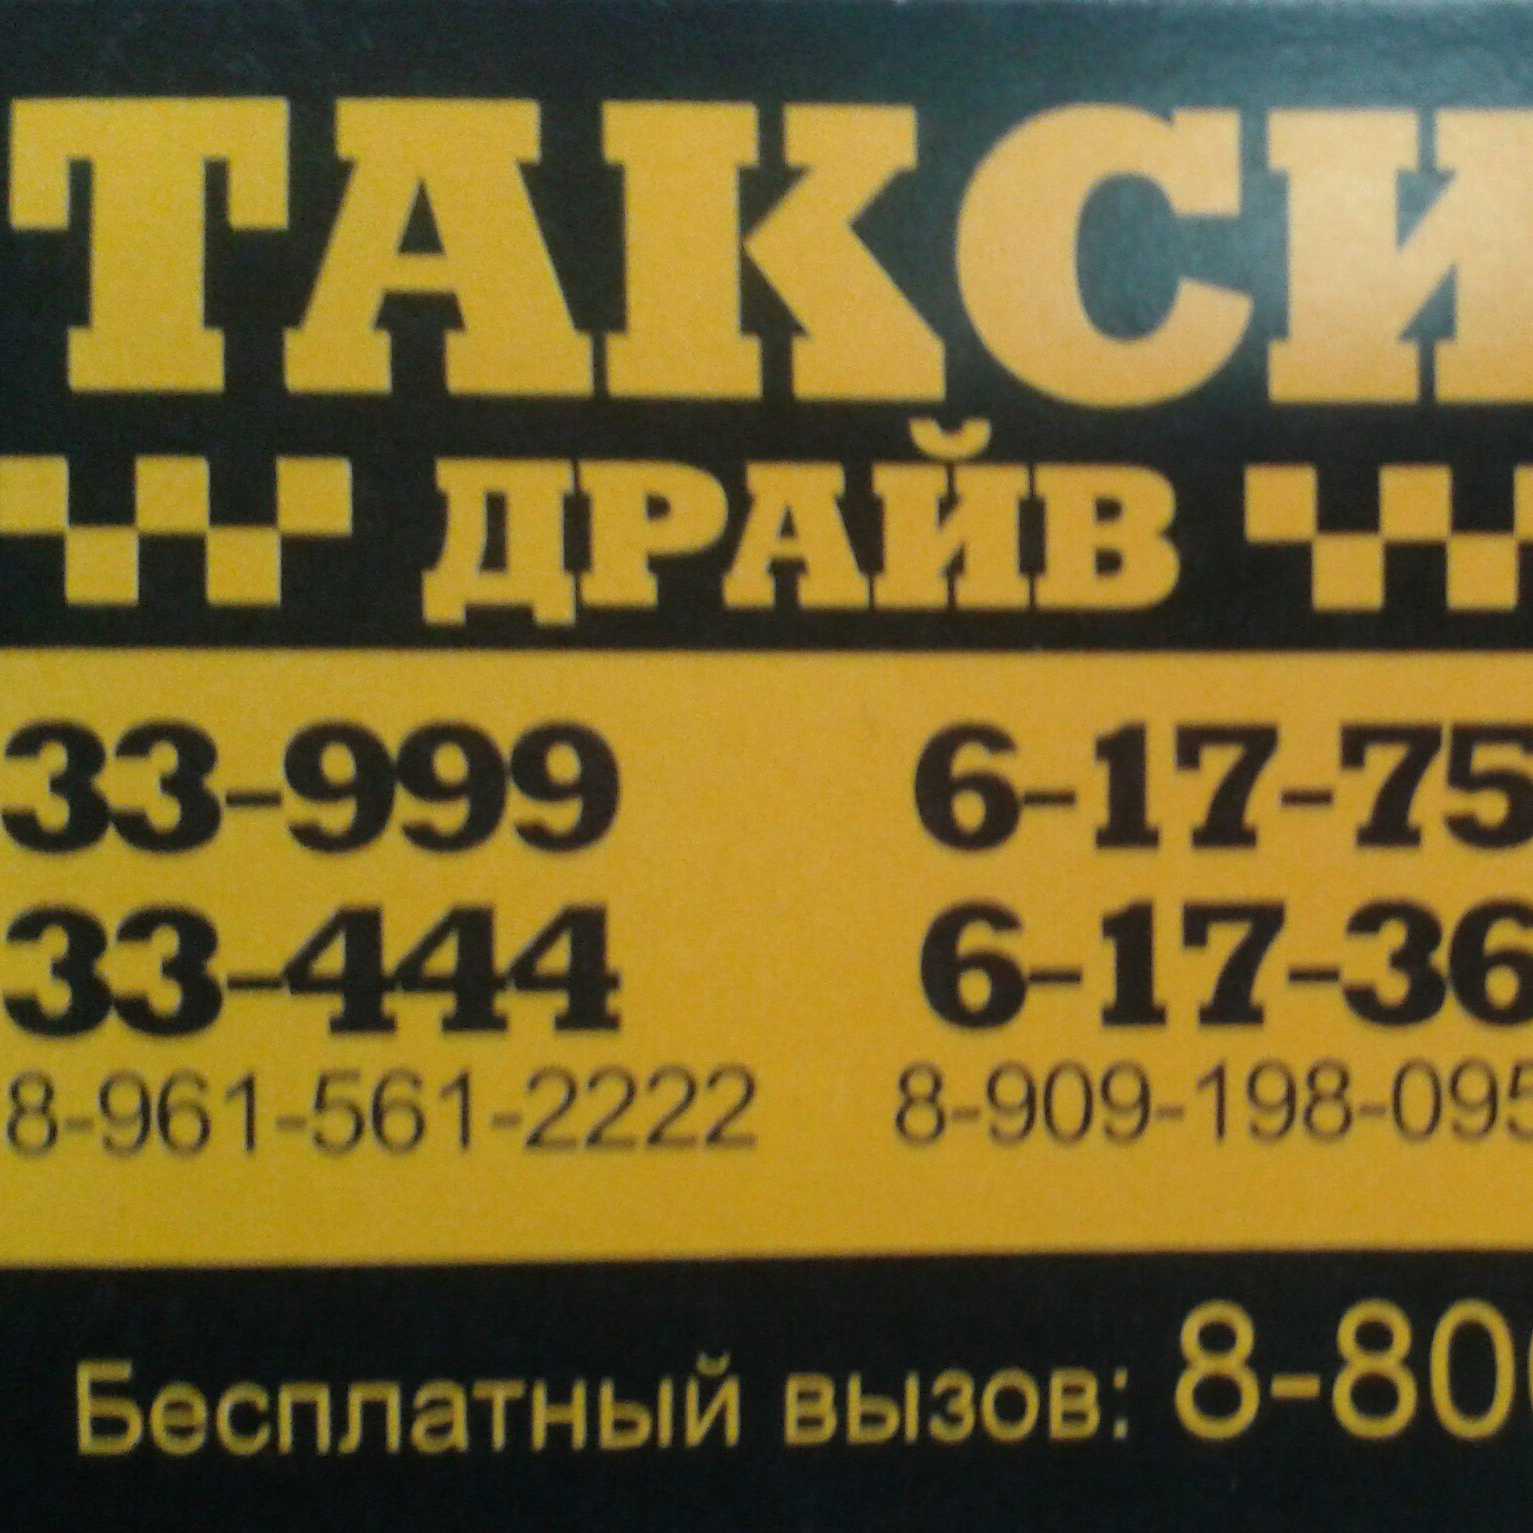 Такси в Барде. Такси Салехард. Такси драйв барда. Такси Салехард номера. Номер телефона камчатского такси